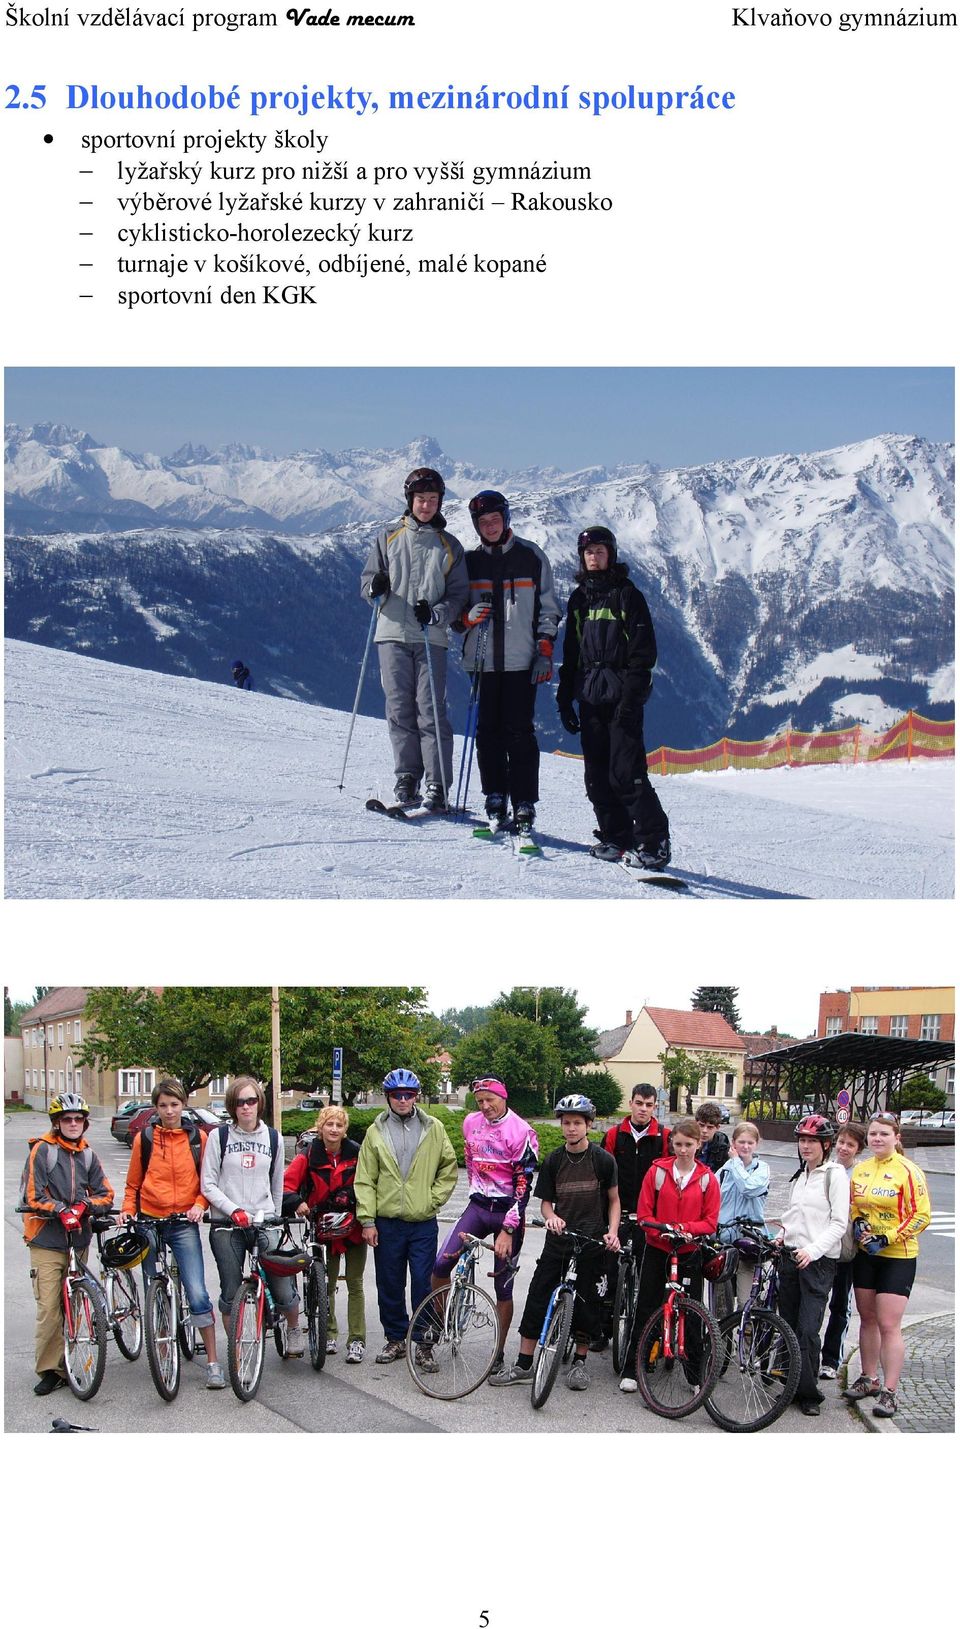 výběrové lyžařské kurzy v zahraničí Rakousko